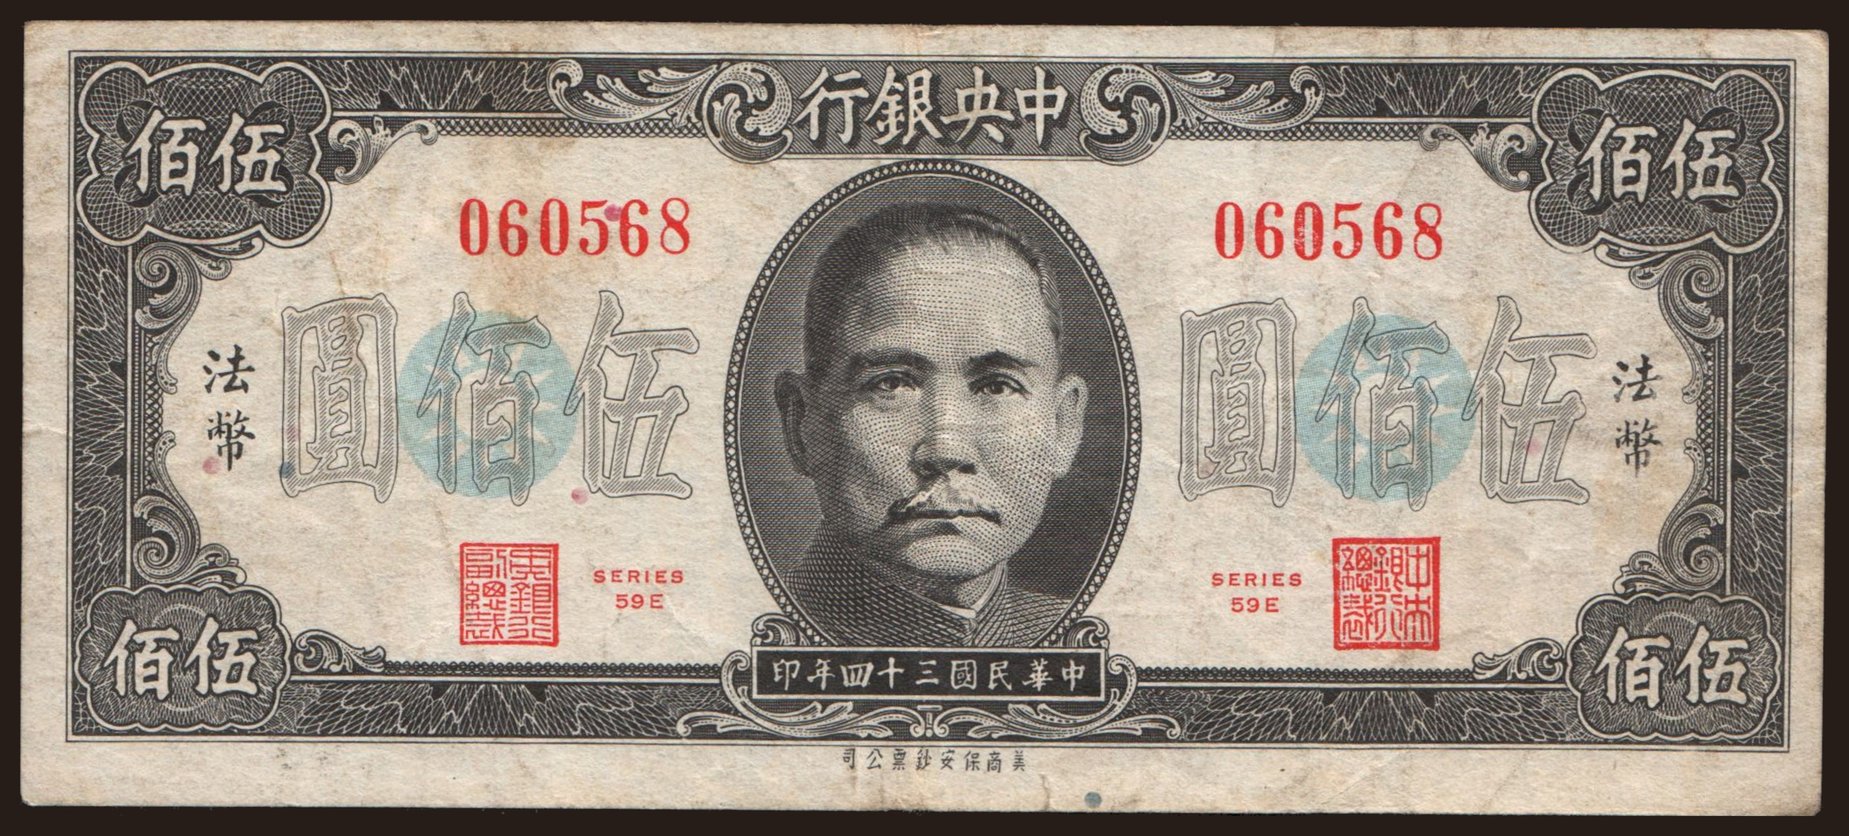 Central Bank of China, 500 yuan, 1945